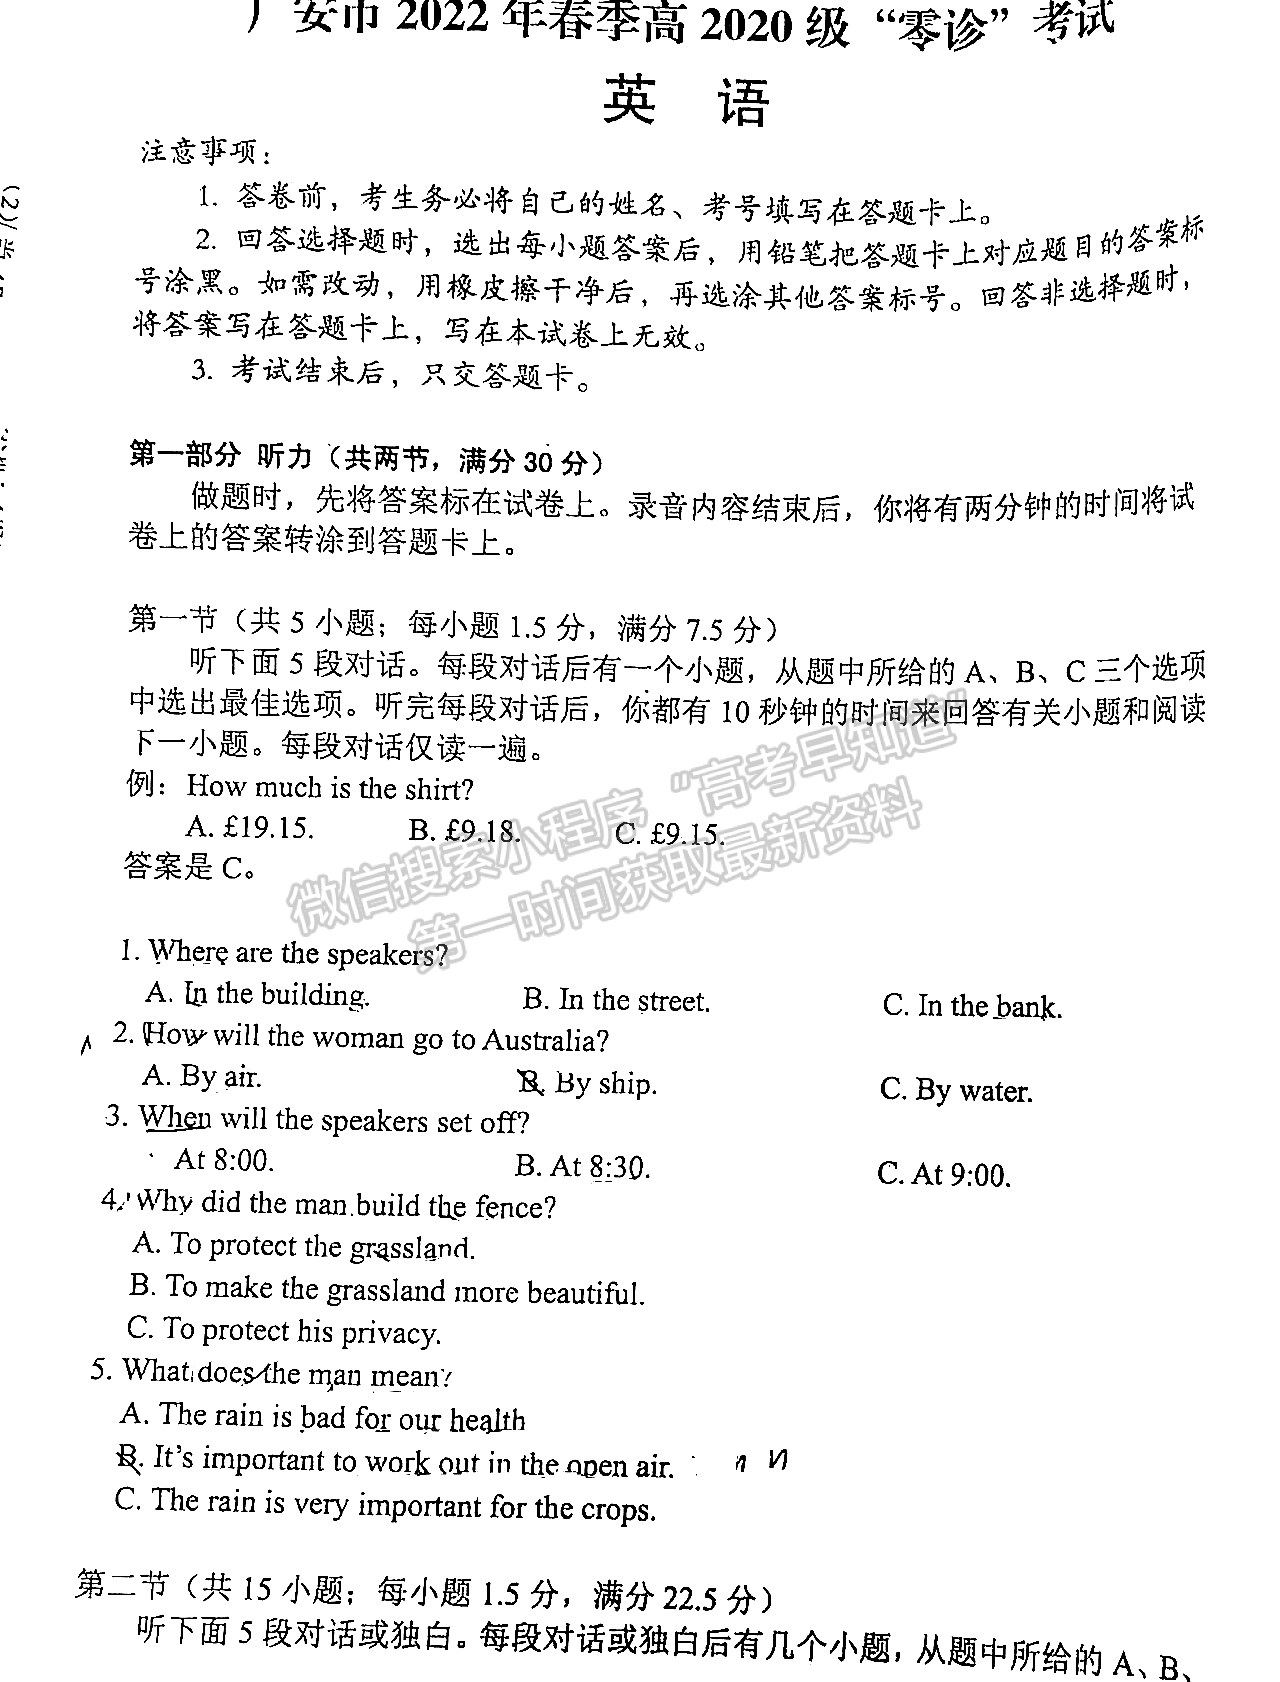 2023四川省广安市高2022年春季高2022级“零诊”考试英语试题及答案